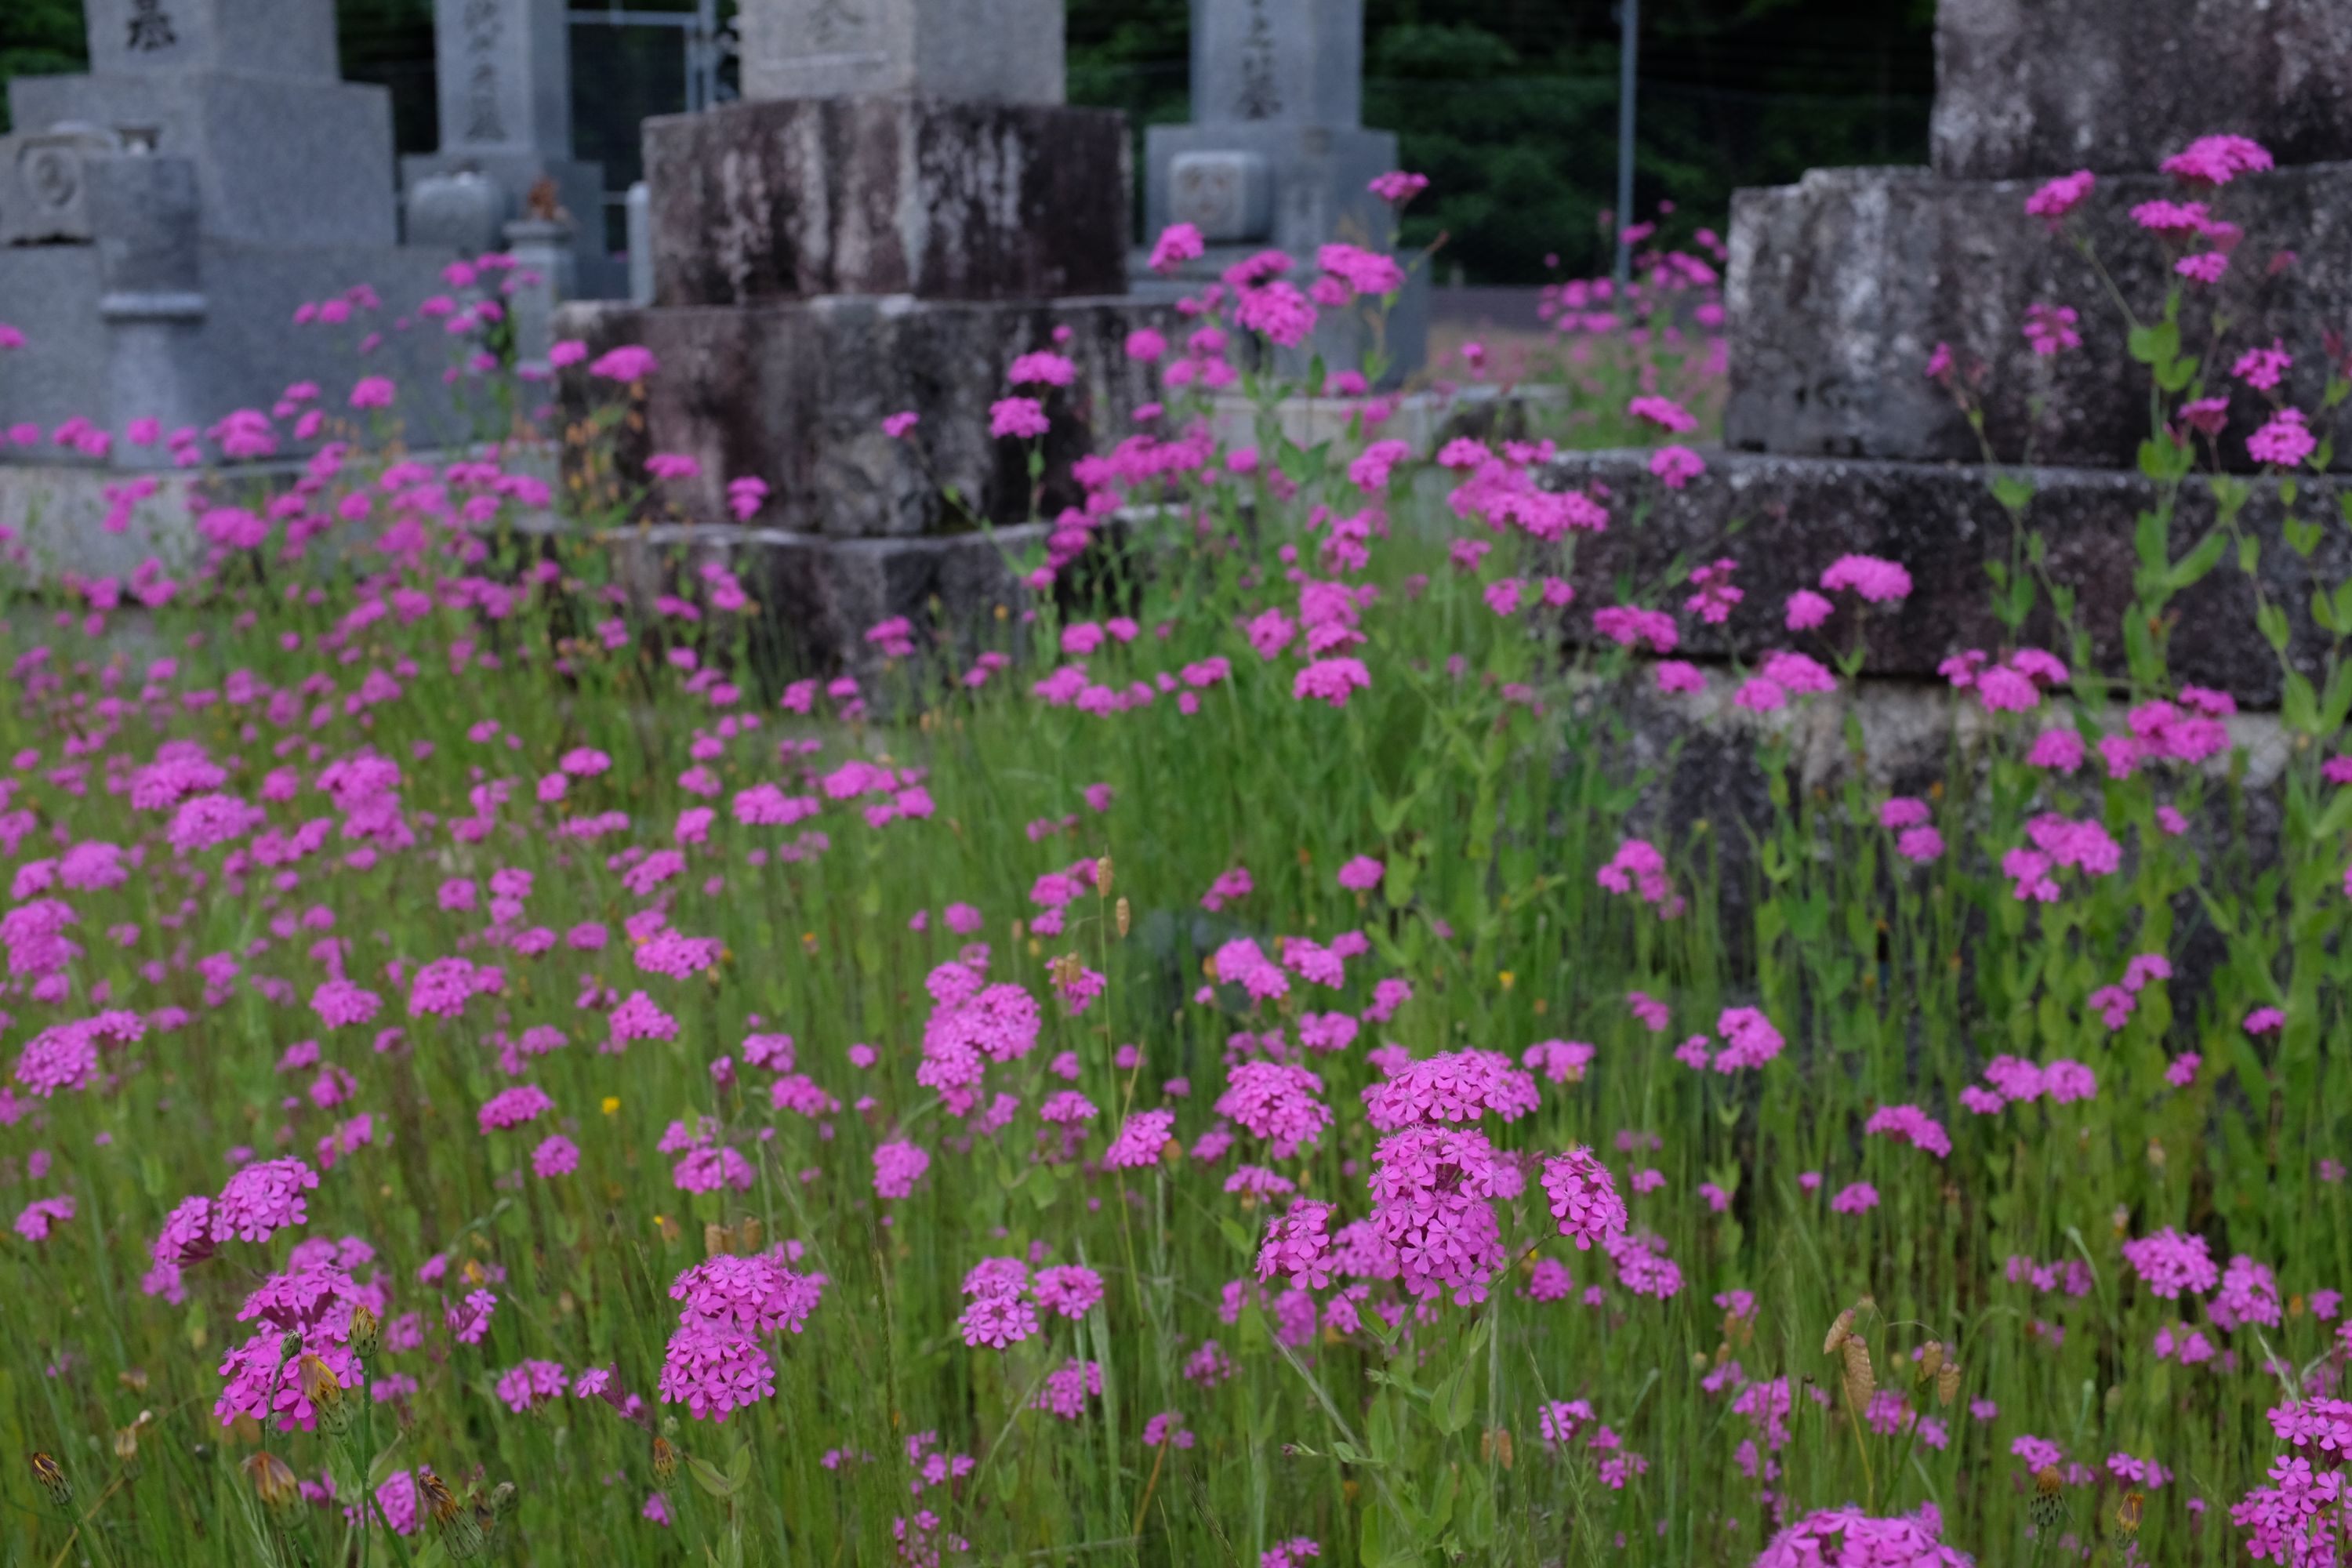 Very bright purple flowers growing between Japanese gravestones.